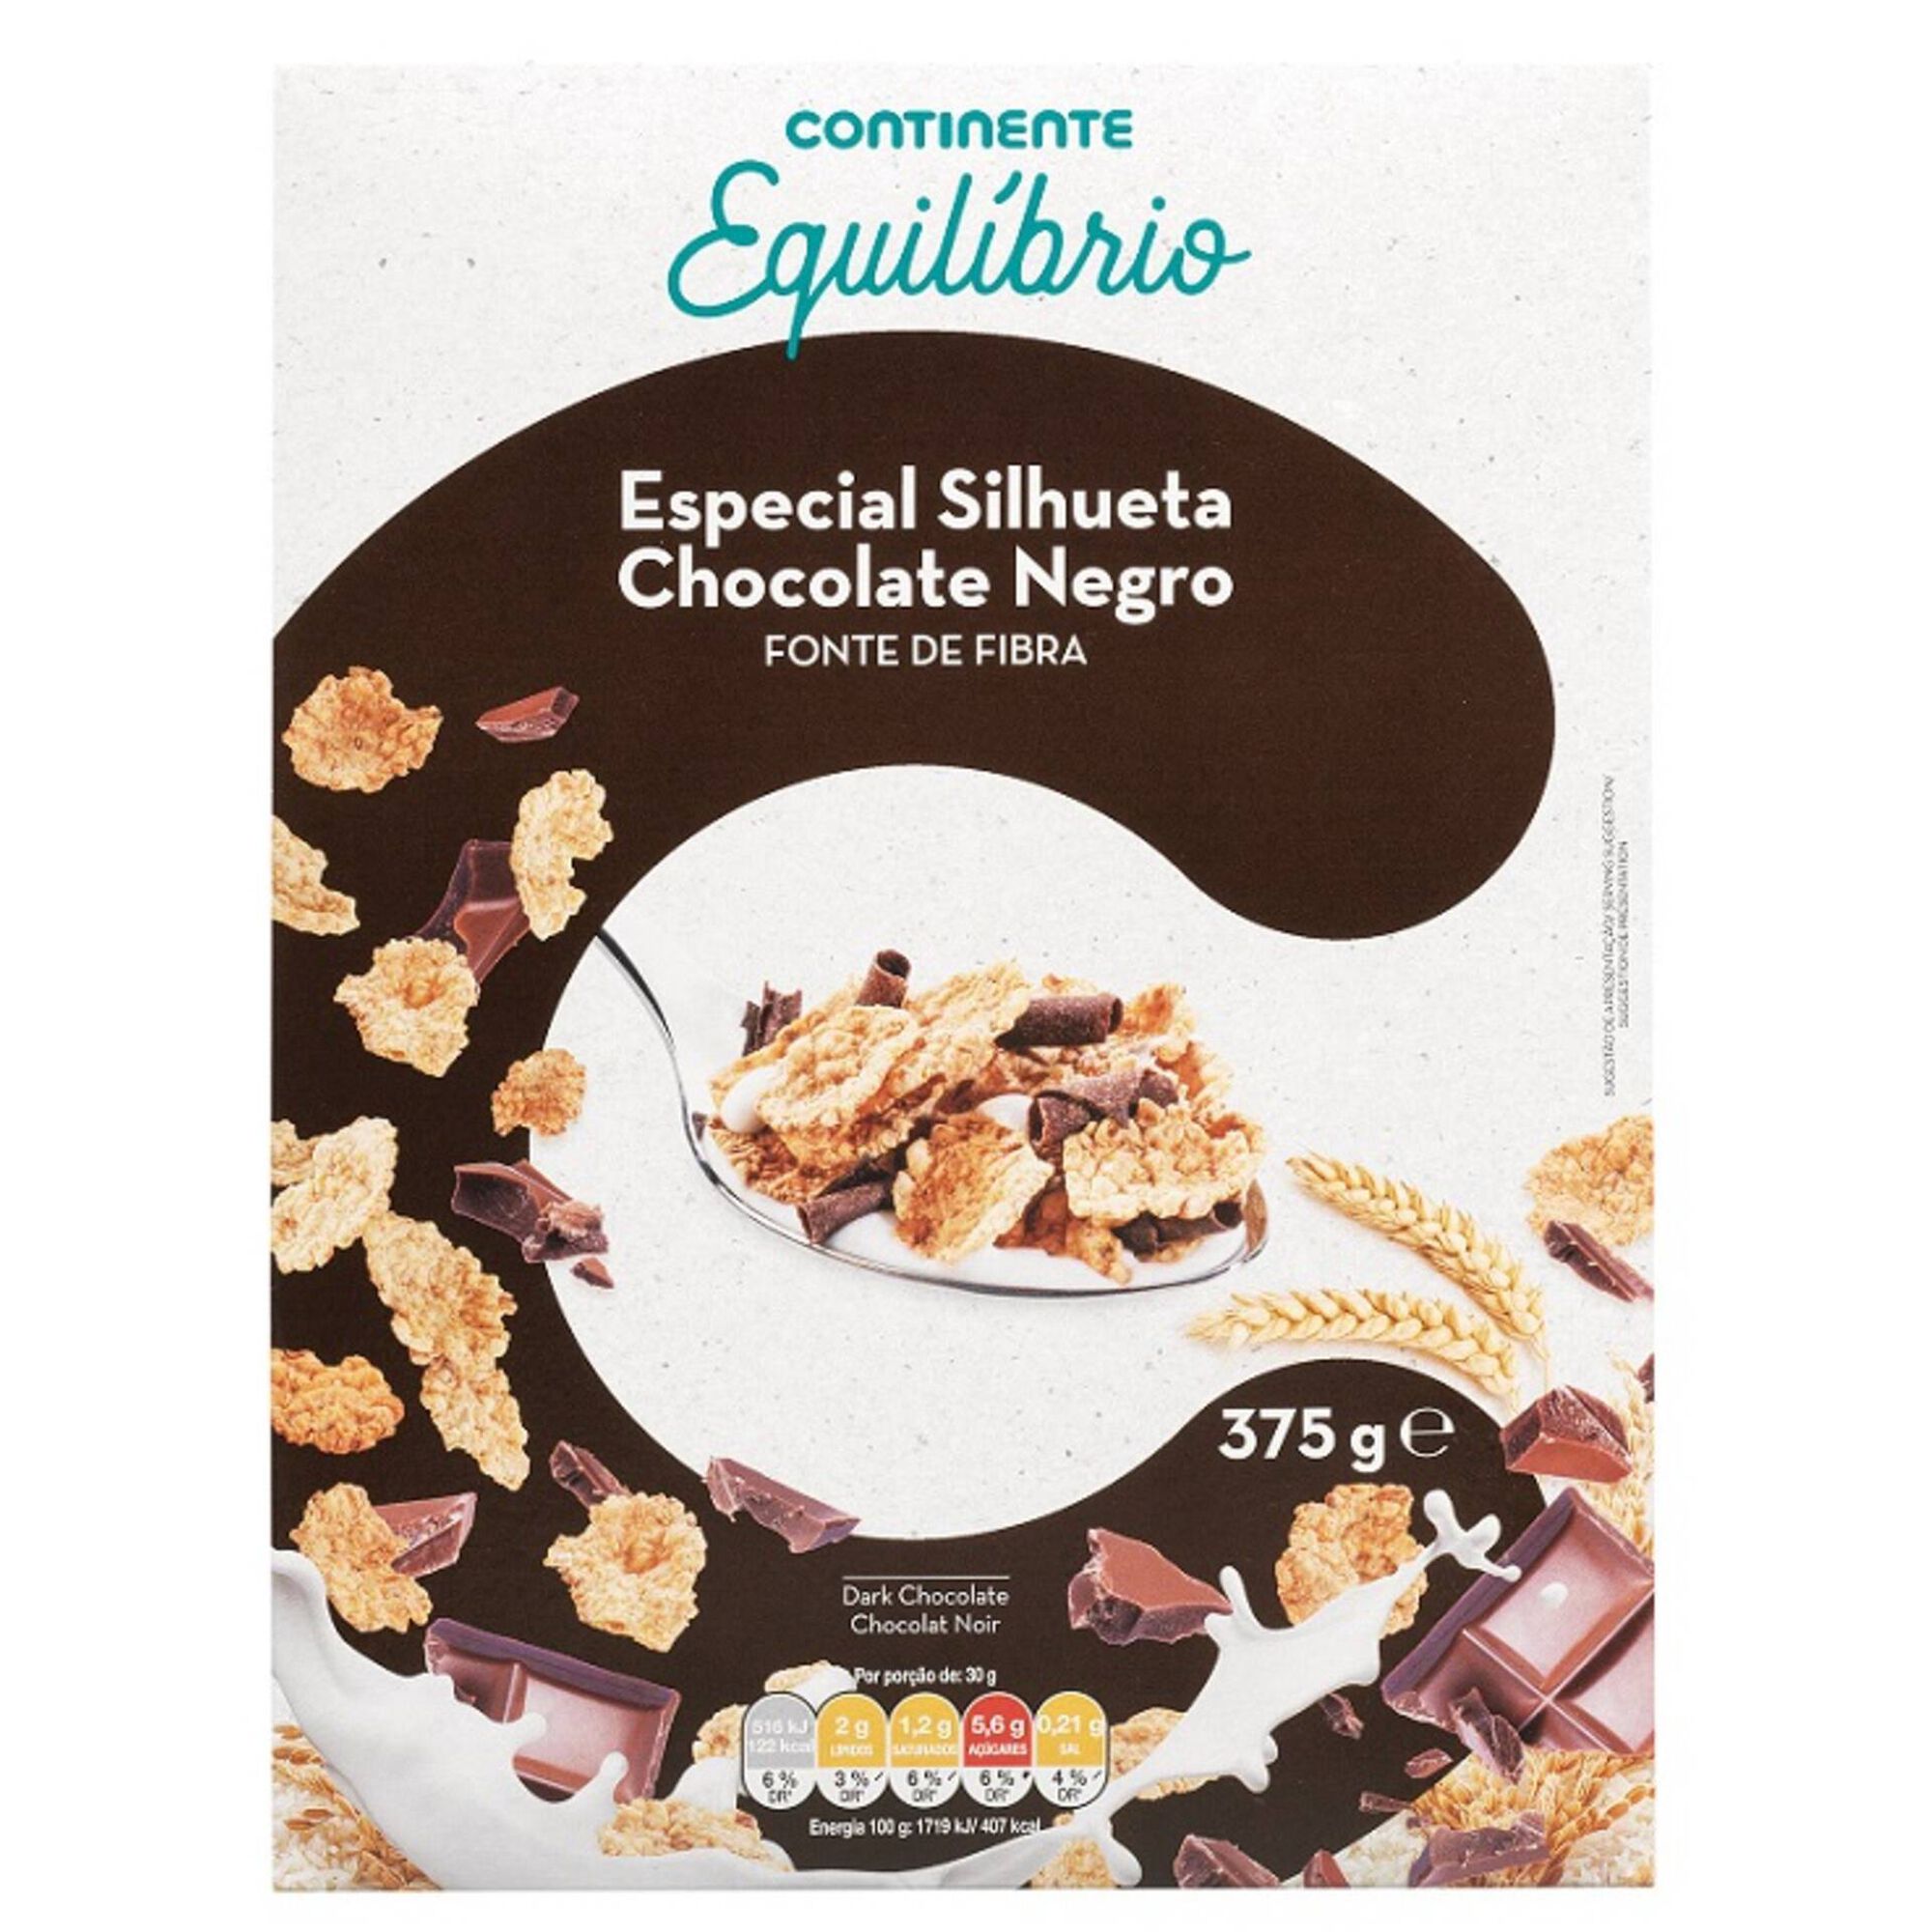 Cereais Especial Silhueta com Chocolate Negro